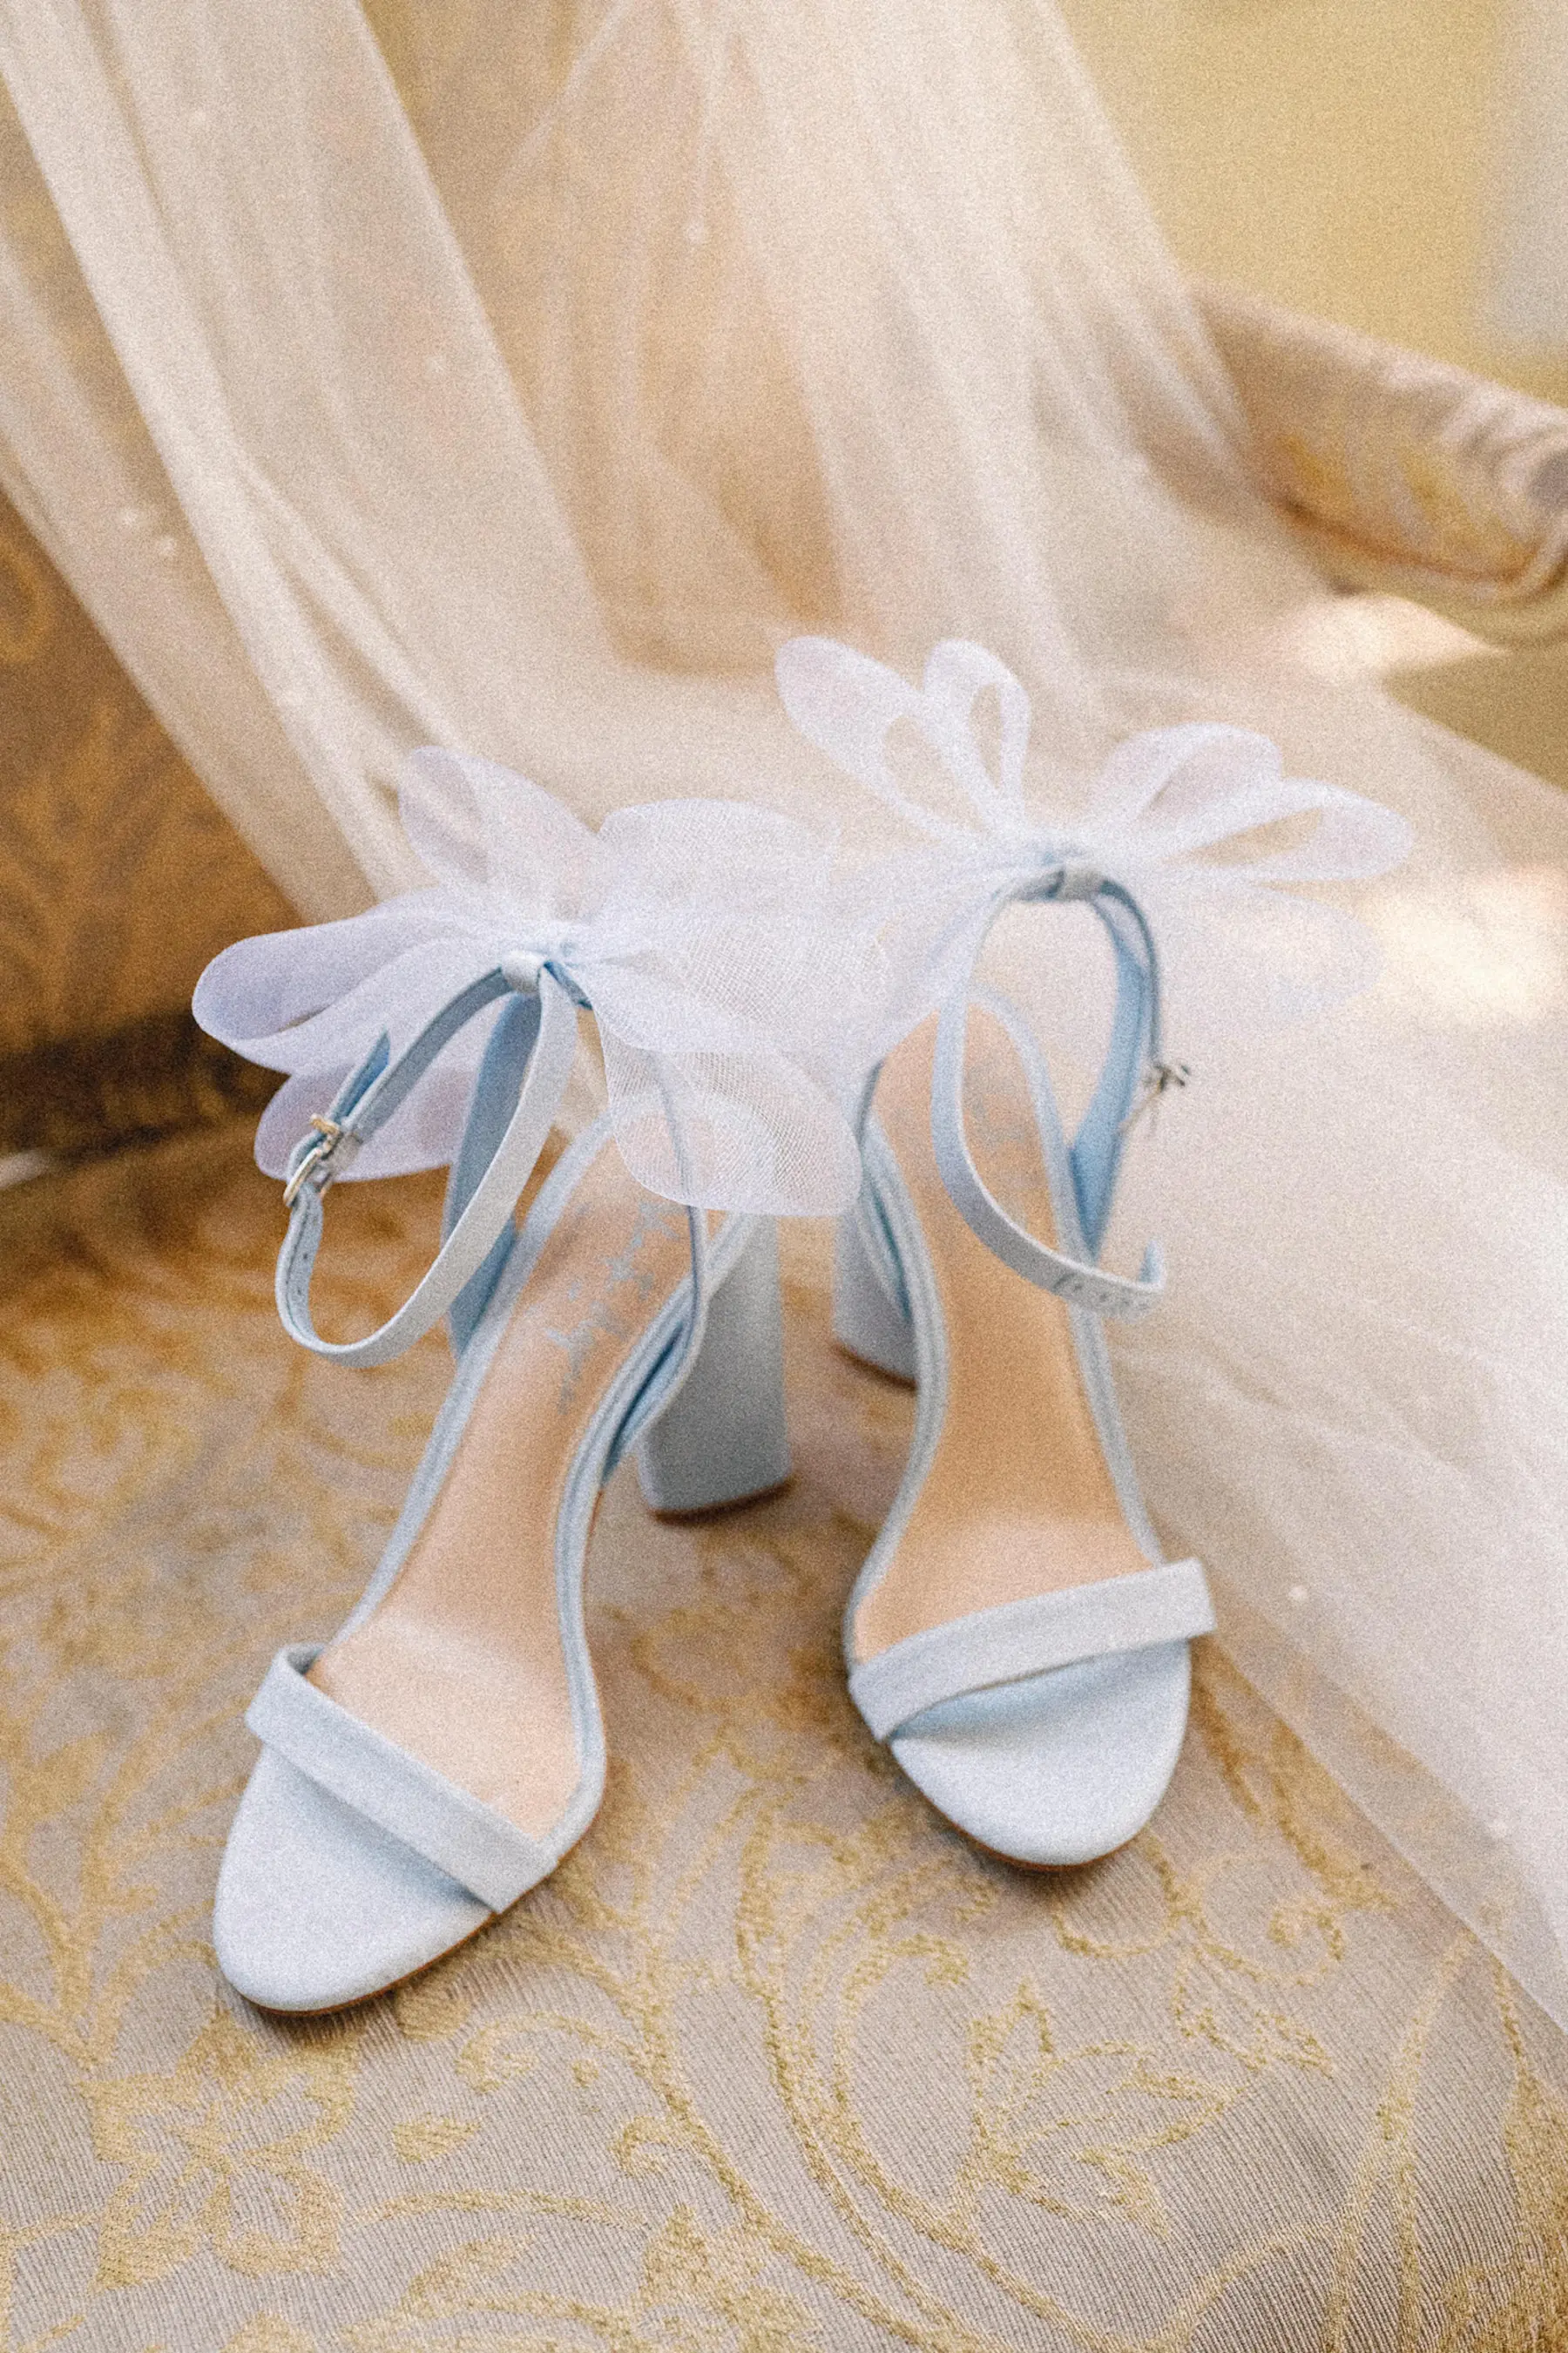 Something Dusty Blue Gianni Bini Bow Wedding Shoe Ideas